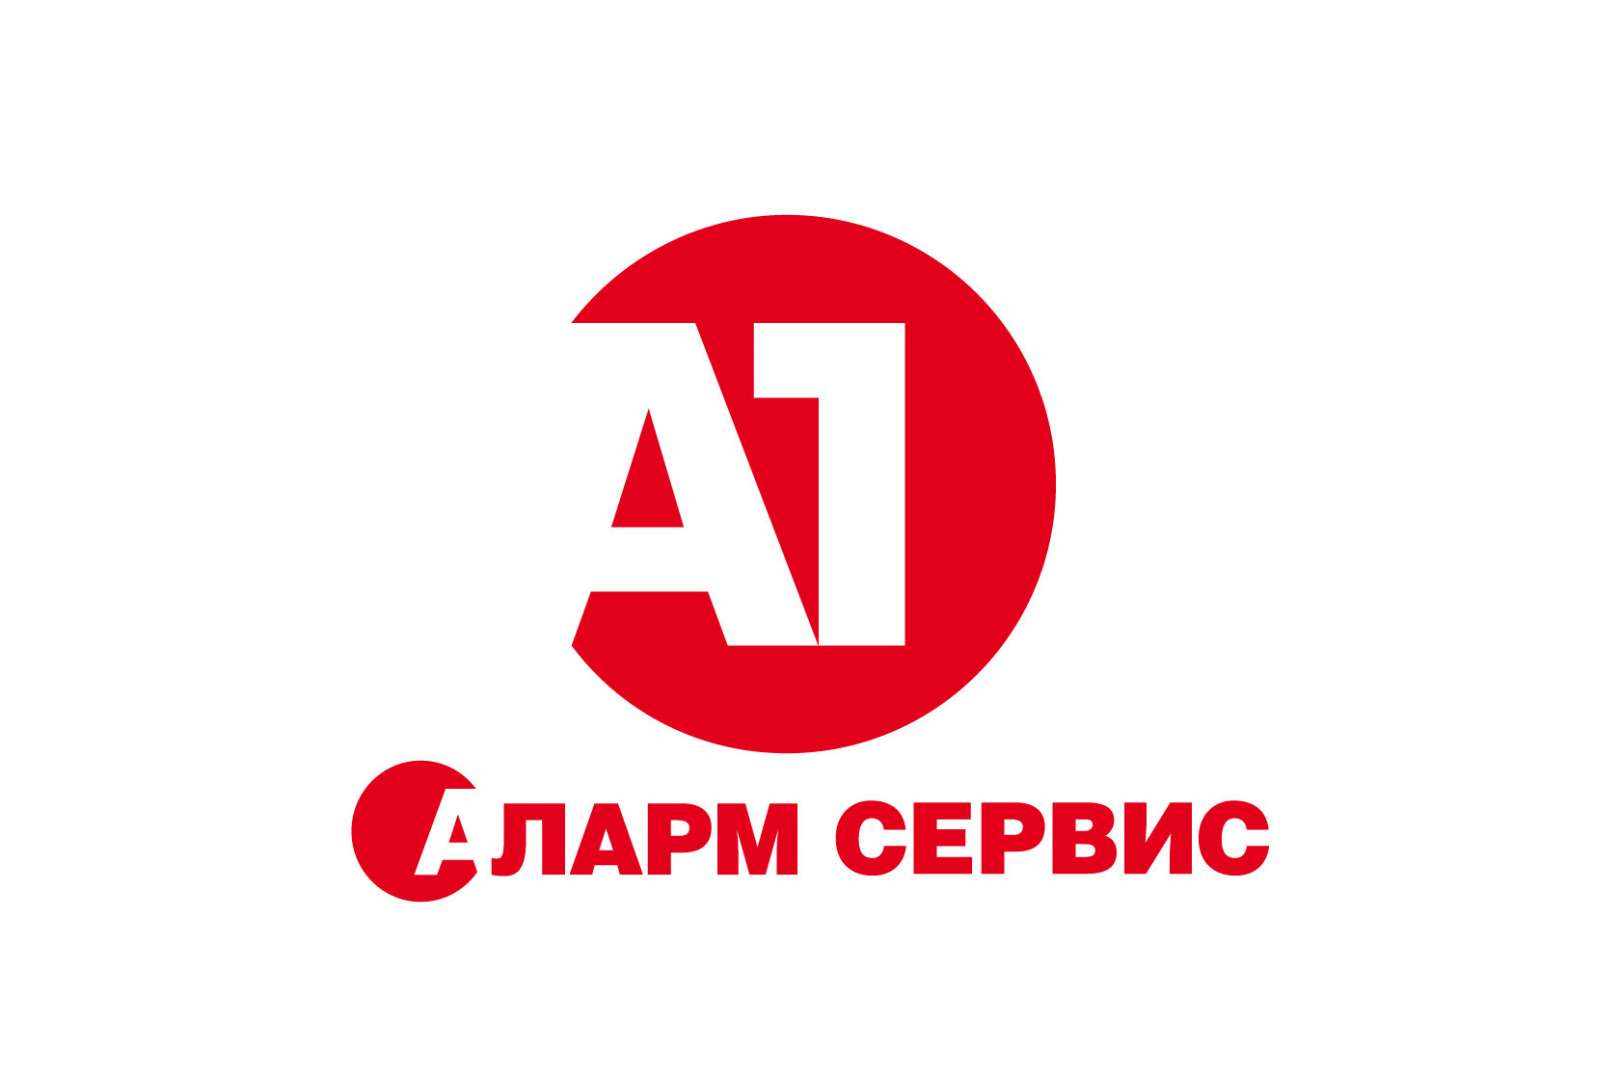 Аларм каталог. Аларм сервис. Аларм сервис Омск. Аларм сервис Москва. Аларм сервис Омск логотип.